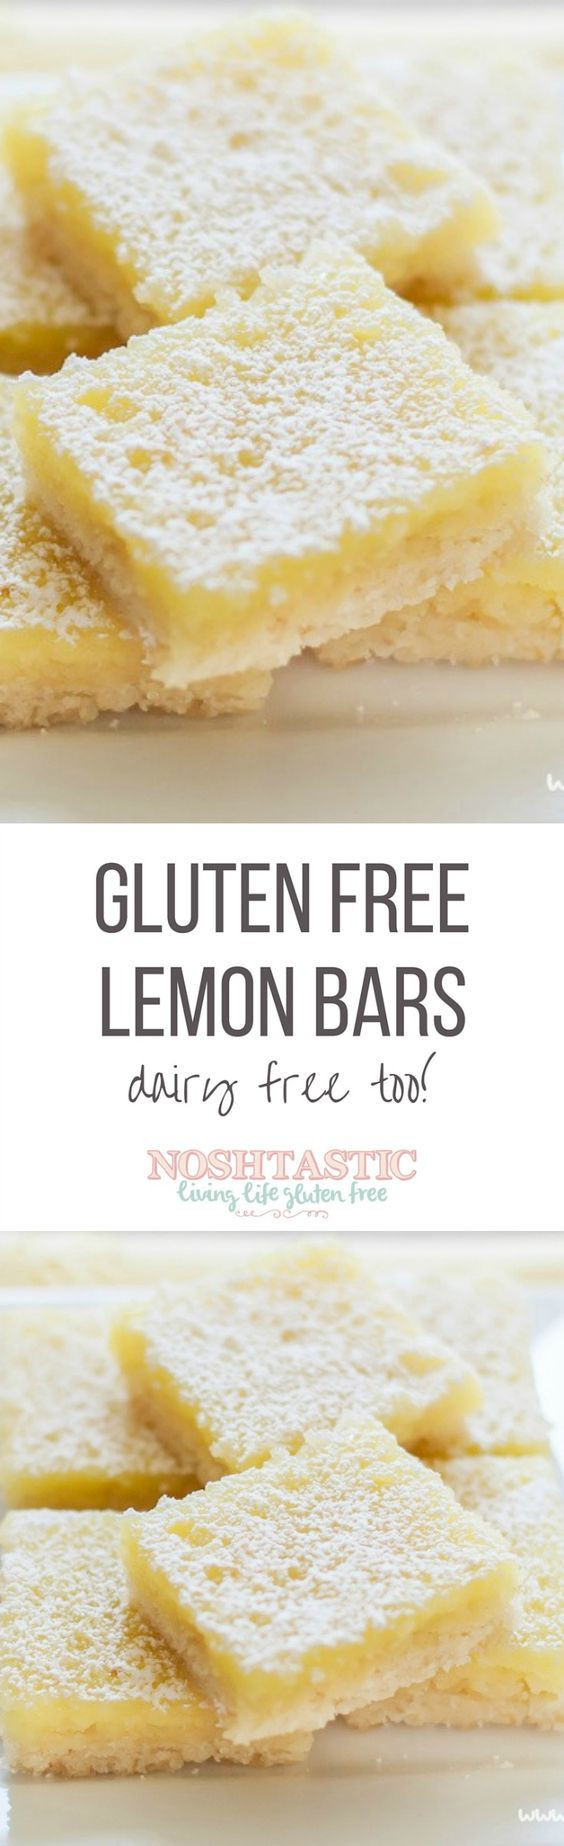 Gluten Free Dairy Free Desserts To Buy
 Best 25 Egg free desserts ideas on Pinterest